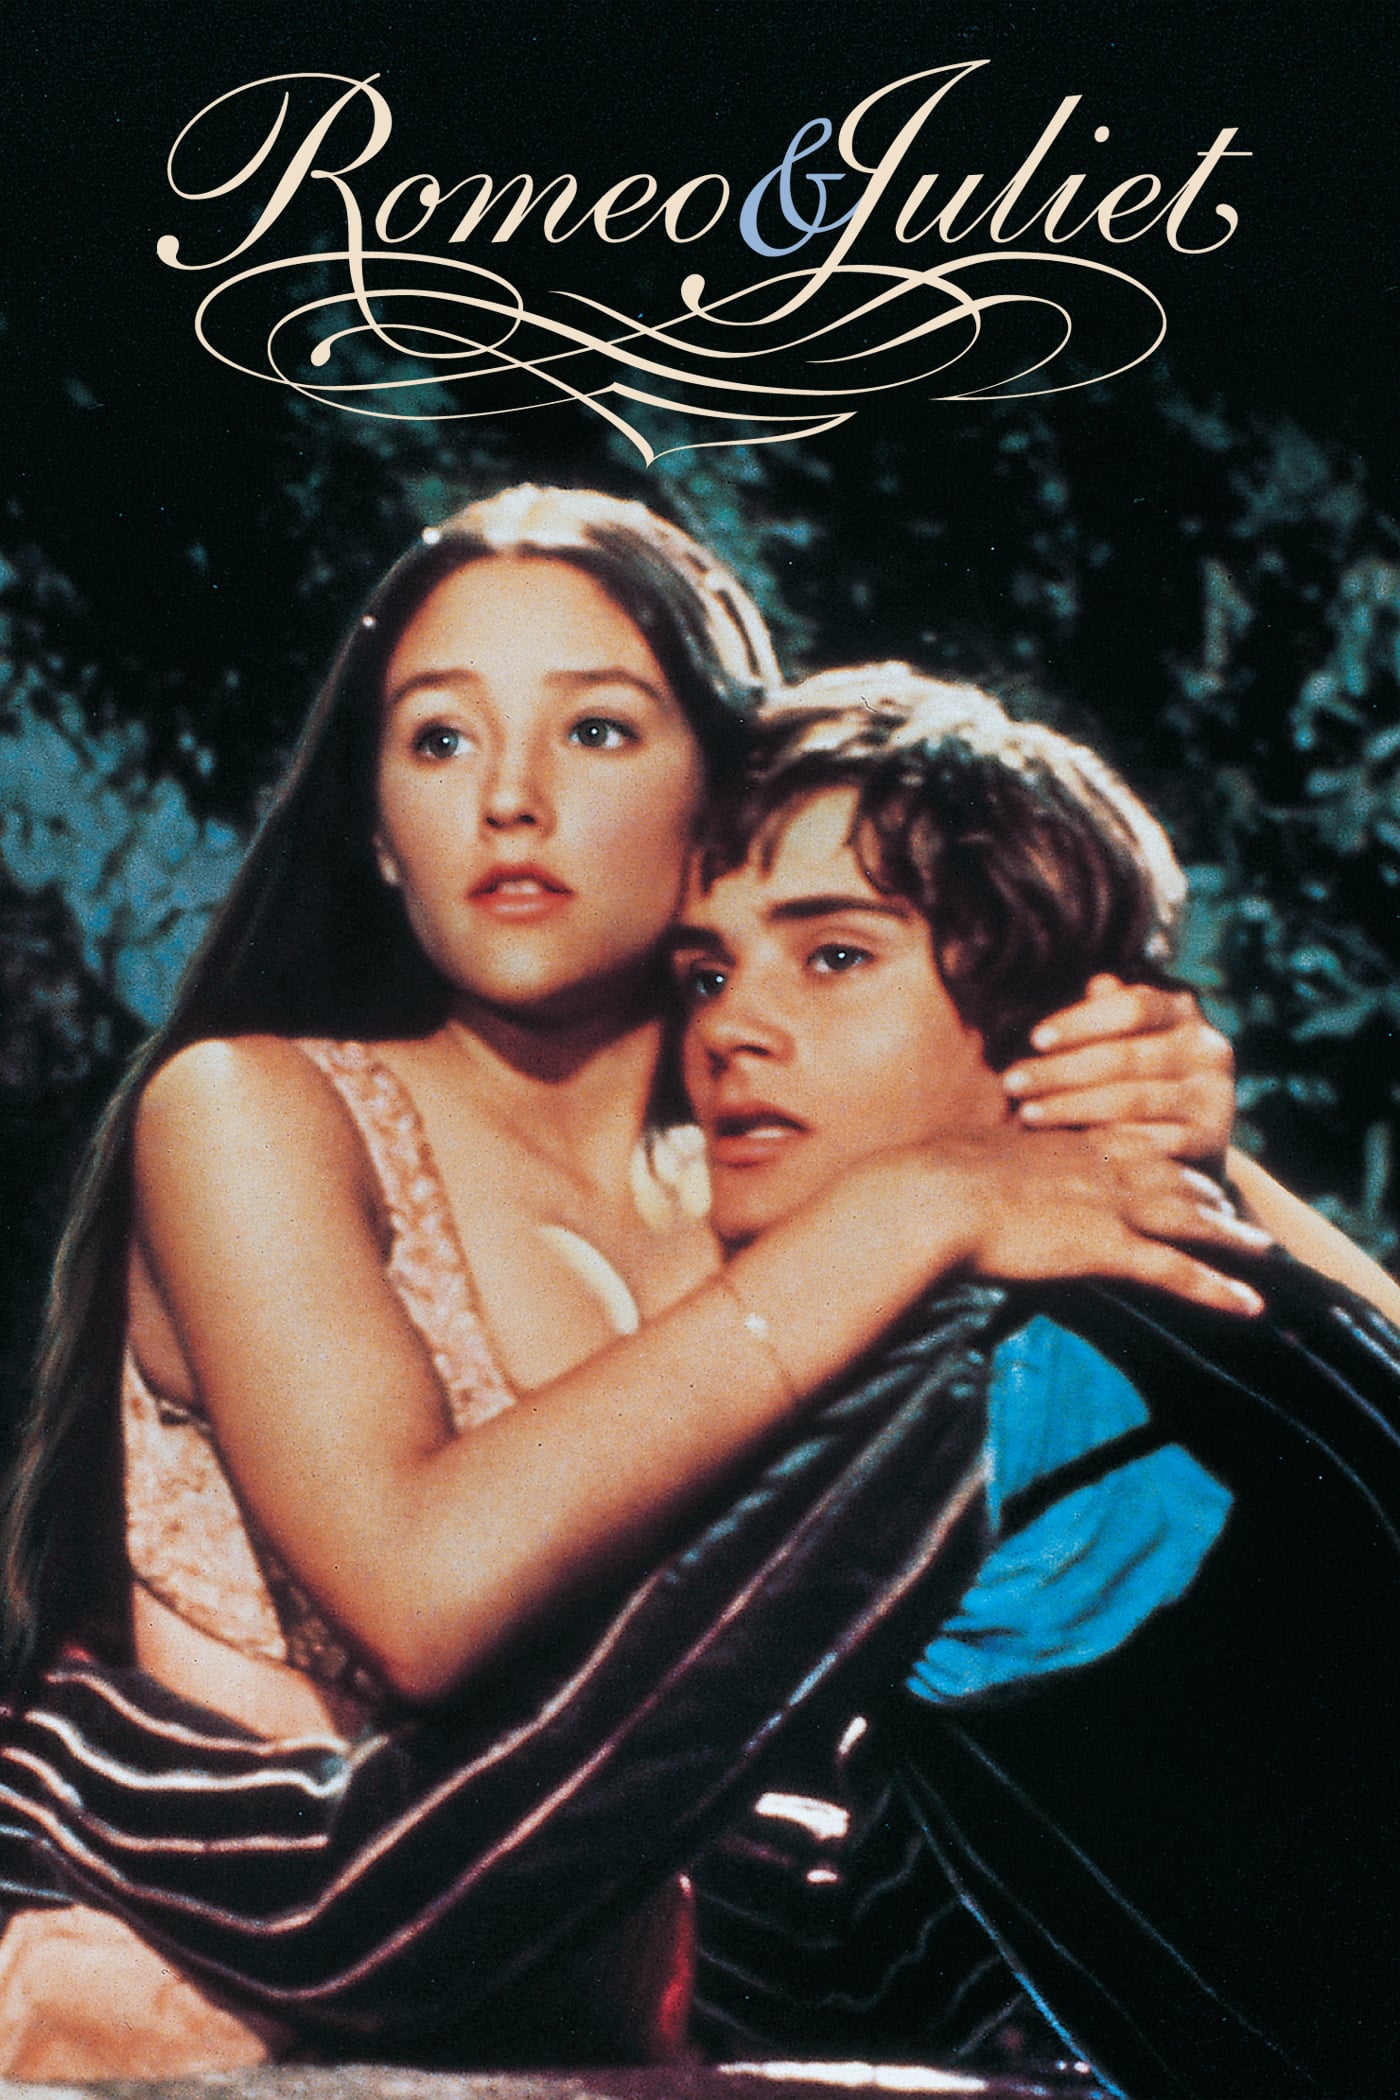 Ромео и Джульетта - порнографическое кино-классика в русском переводе - KingPorno